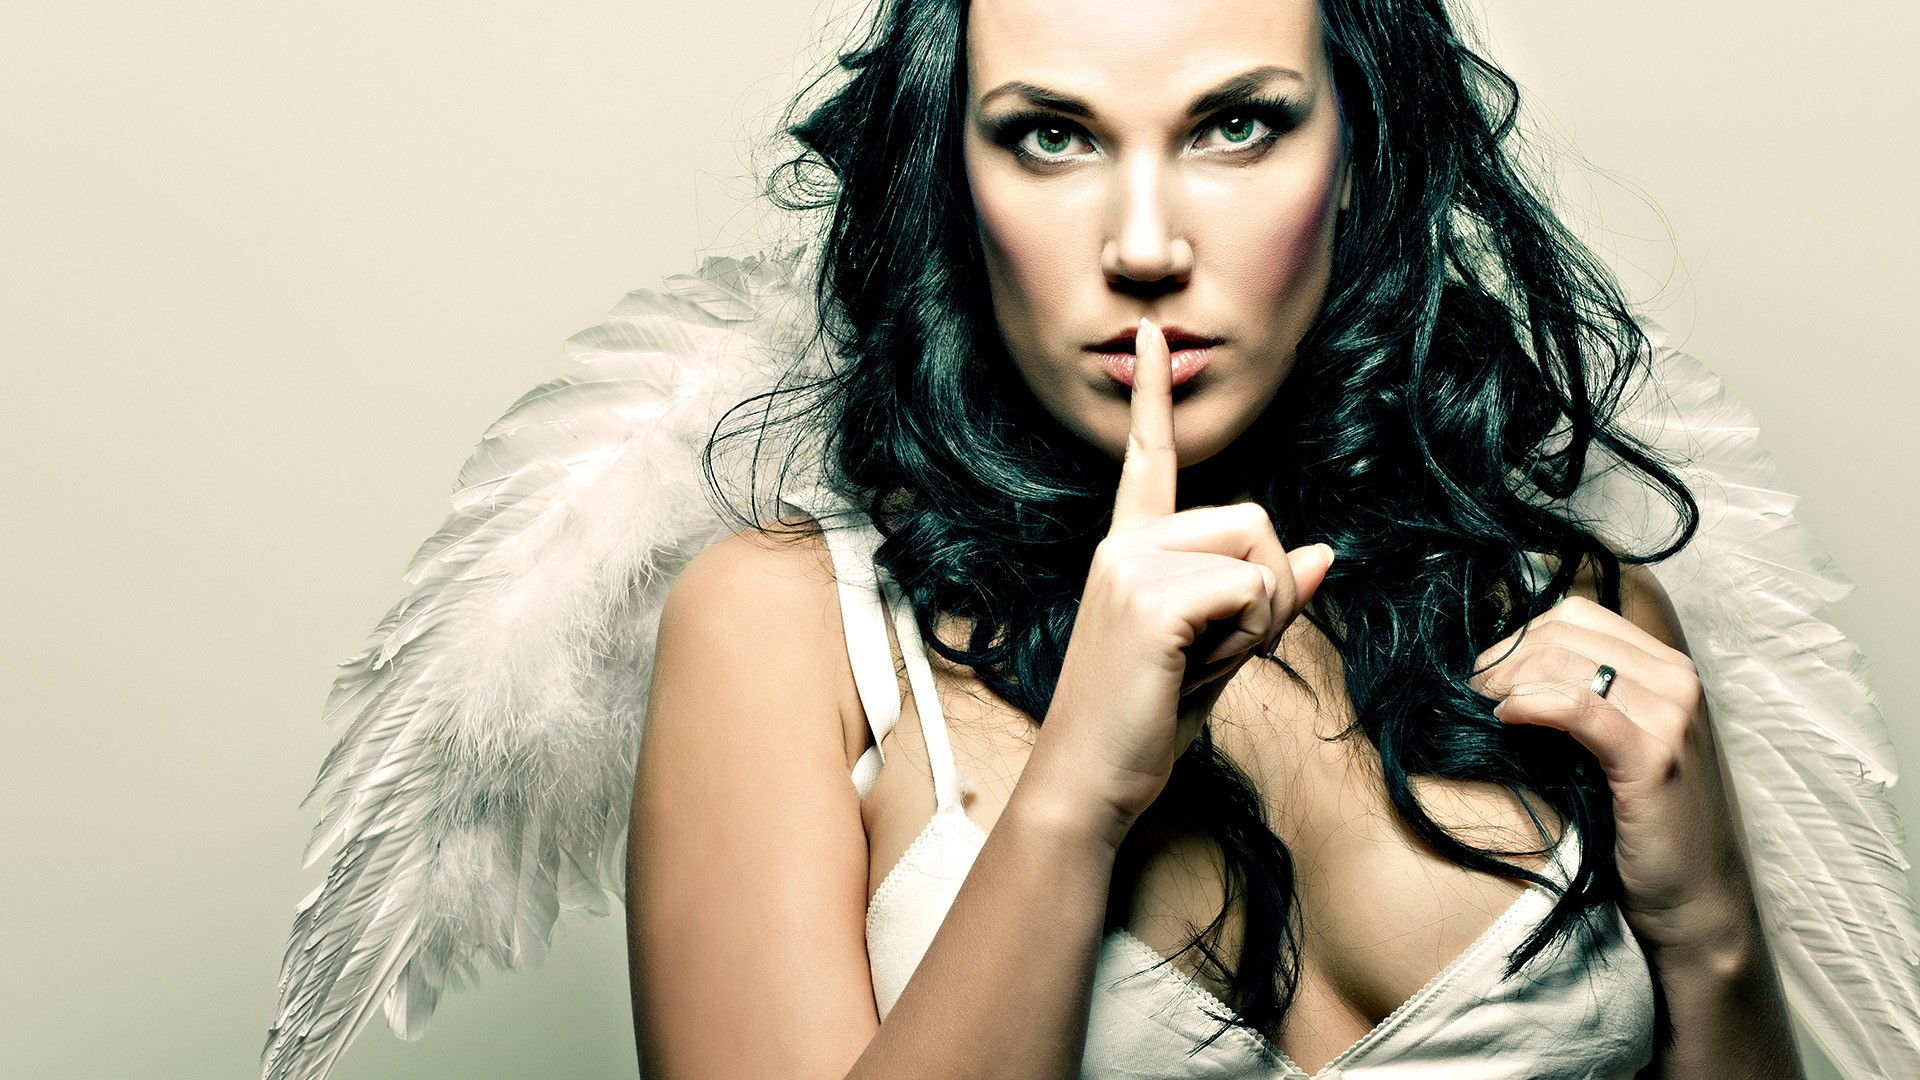 women, wings, green eyes, silence, angel wings, black hair, fingers on lips - desktop wallpaper